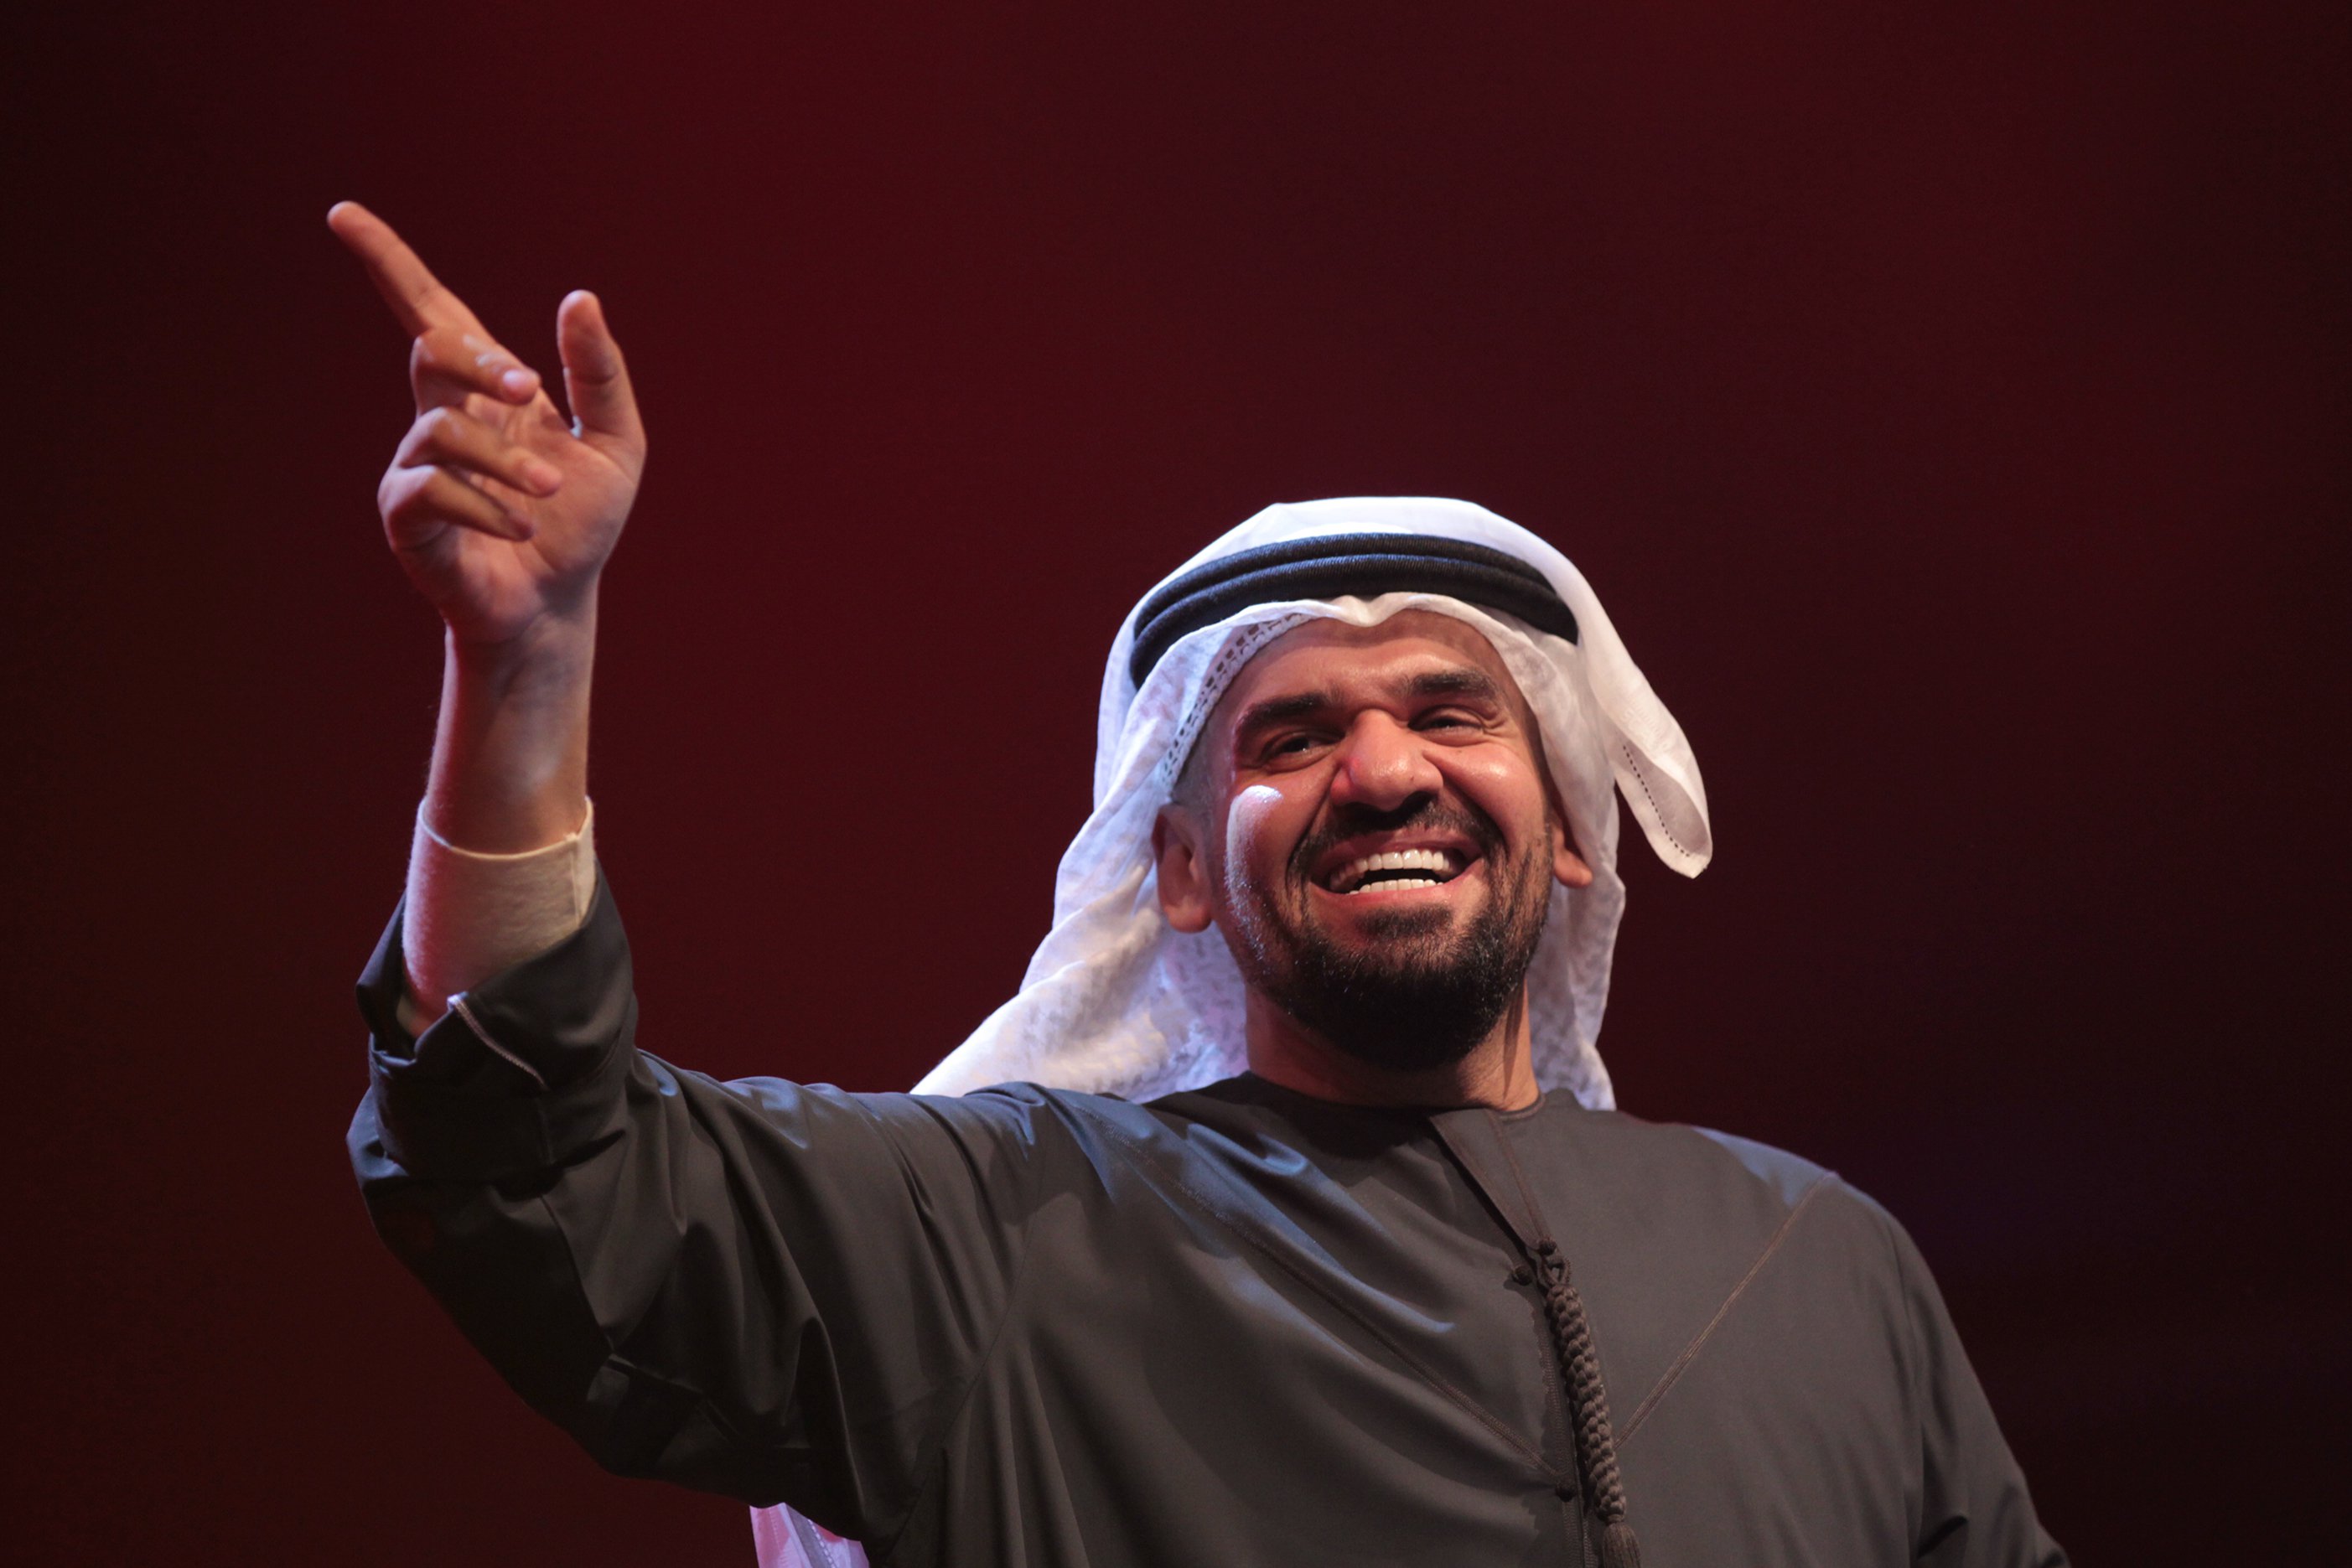 طرح النجم الإماراتي حسين الجسمي أغنية جديدة بعنوان “حبيتها” كهدية بصوته لمدينة “أبو ظبي” ودولة الإمارات العربية المتحدة